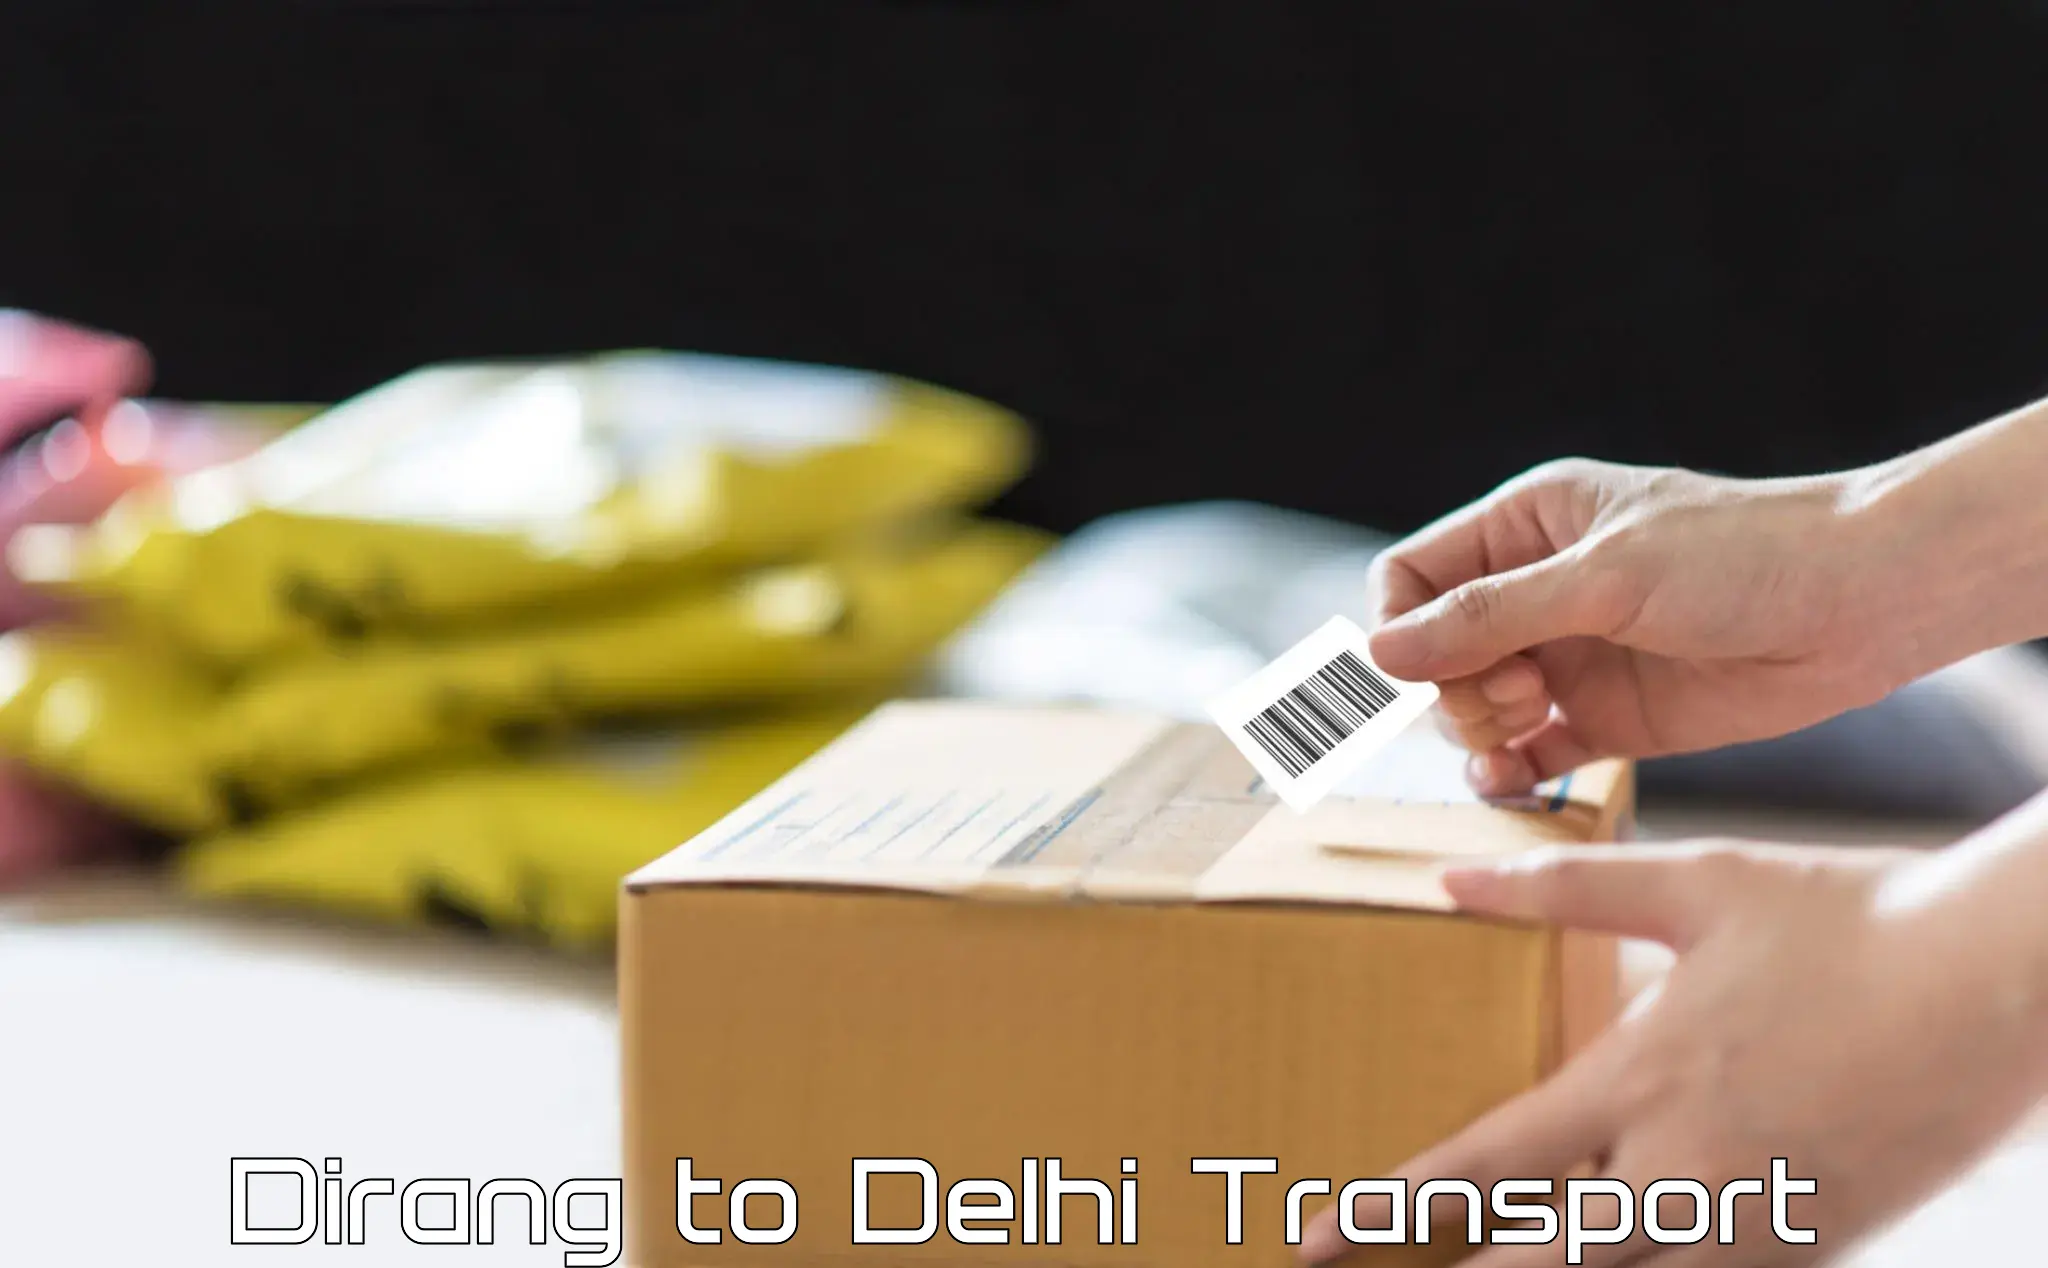 Road transport online services Dirang to Delhi